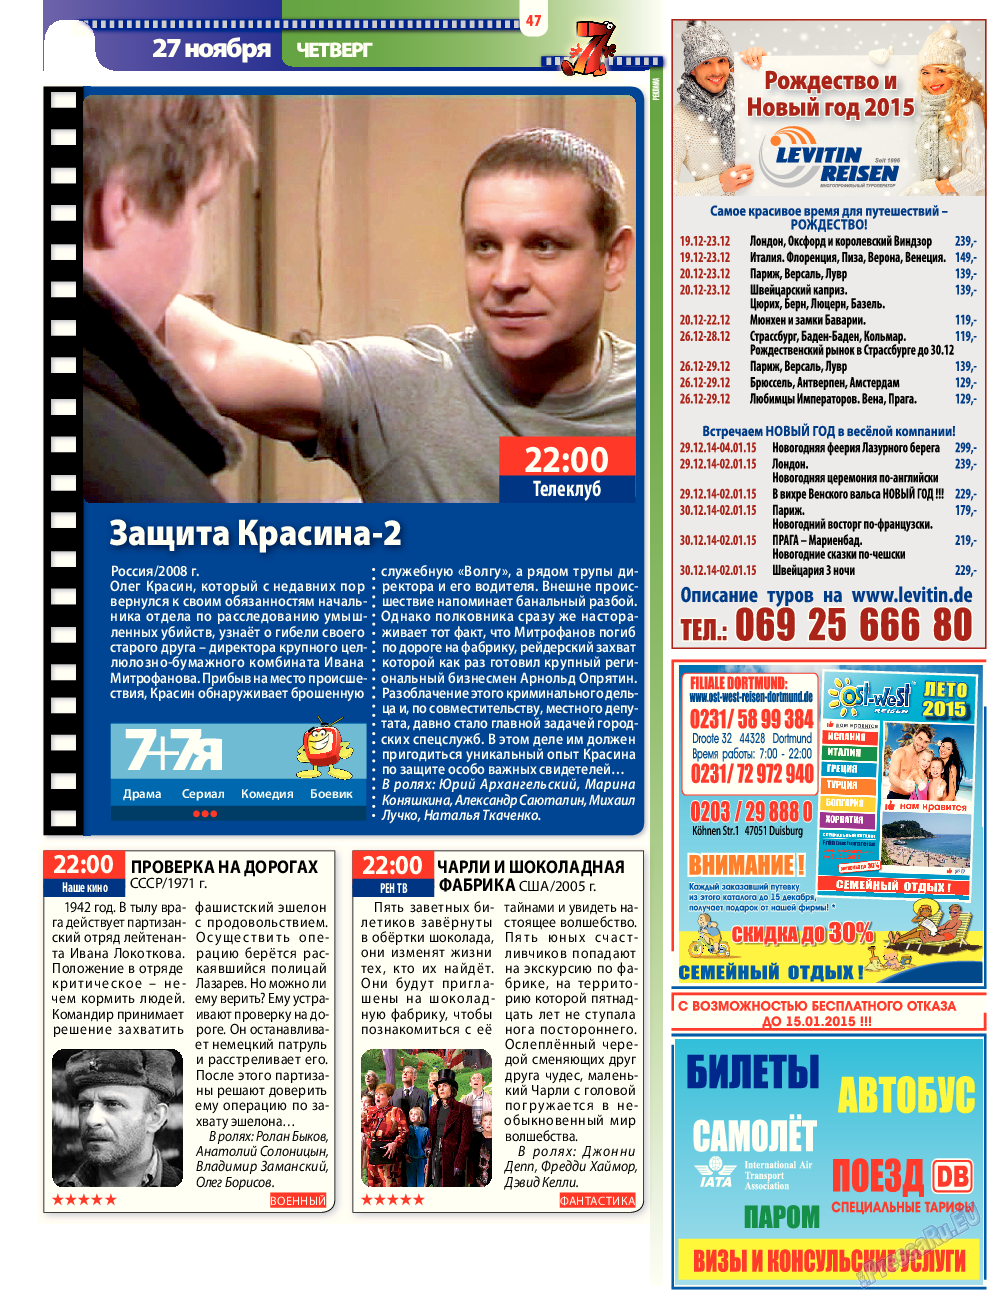 7плюс7я, журнал. 2014 №47 стр.47